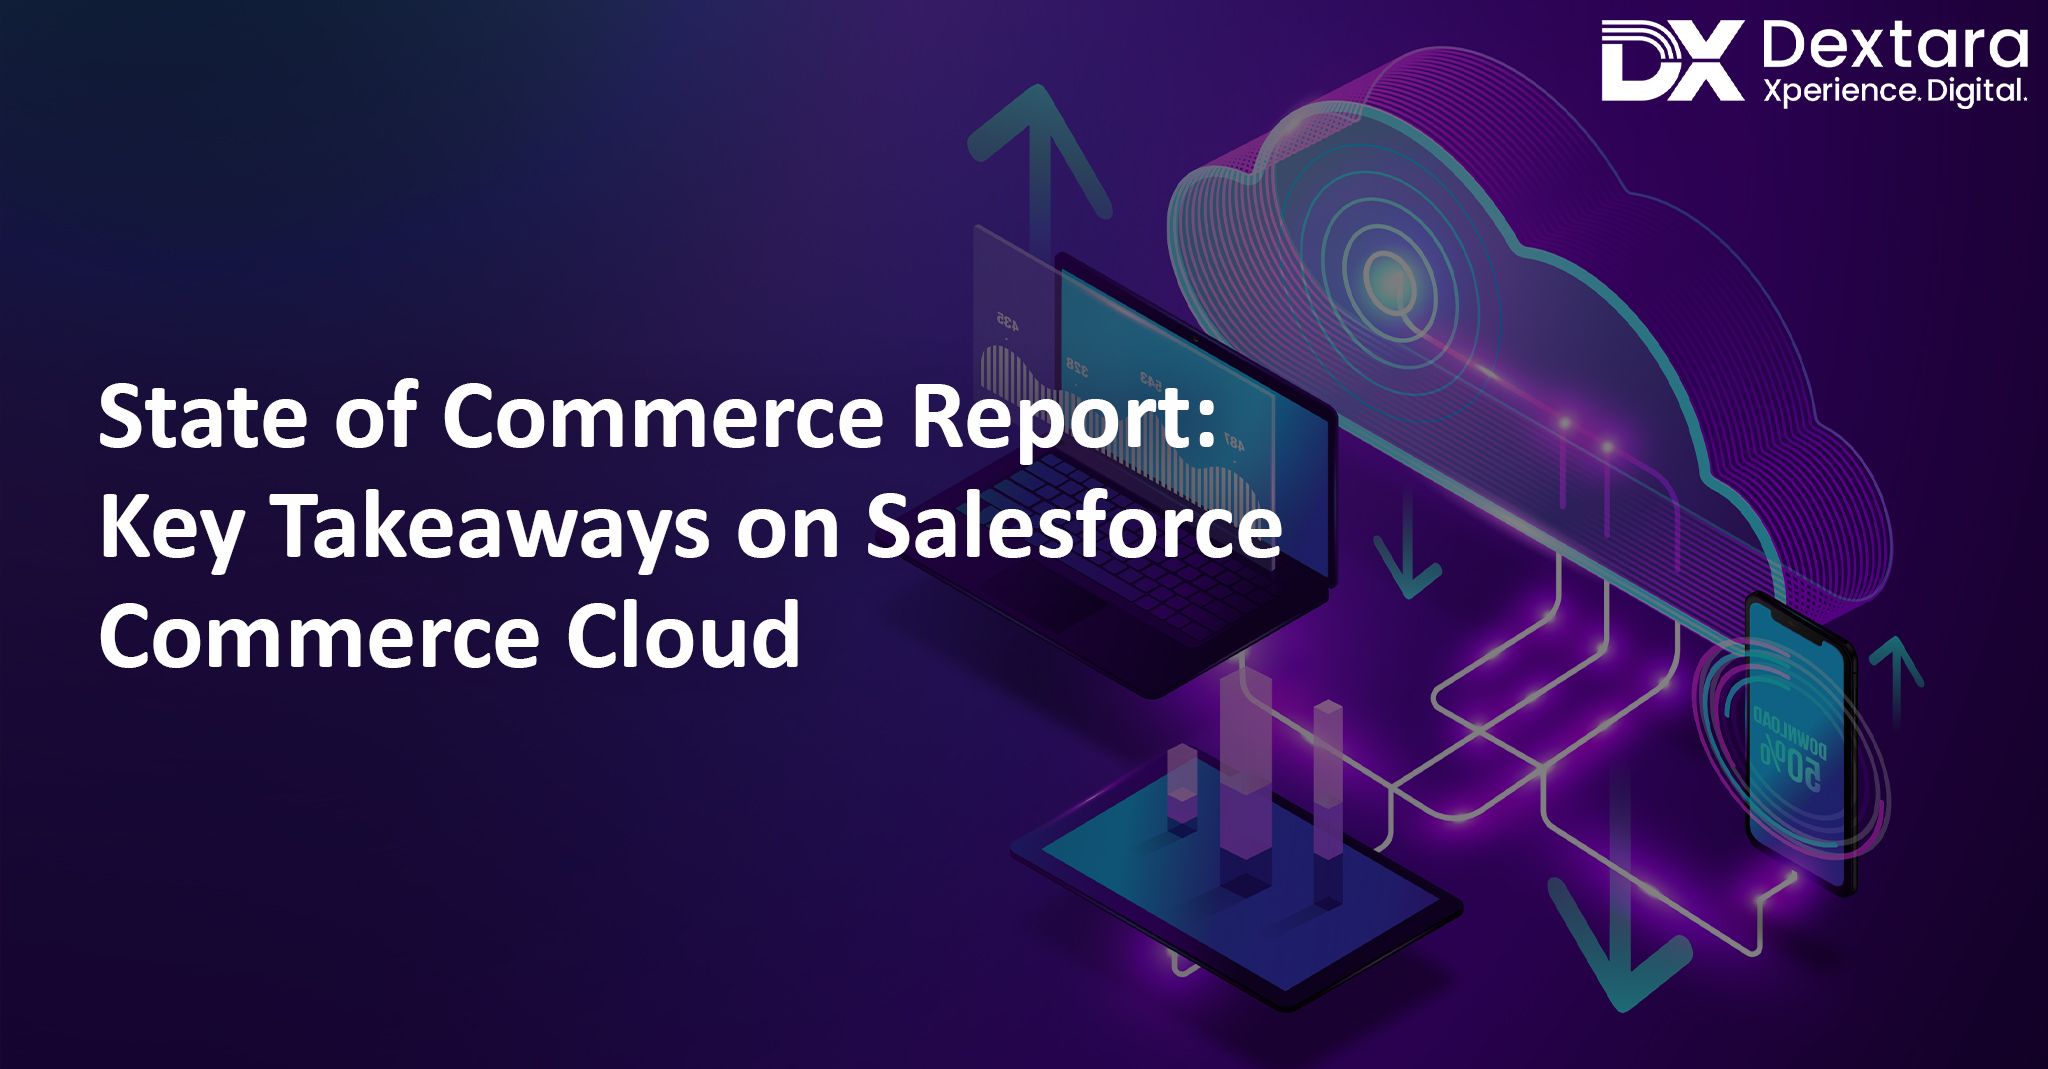 Takeaways on Salesforce Commerce Cloud